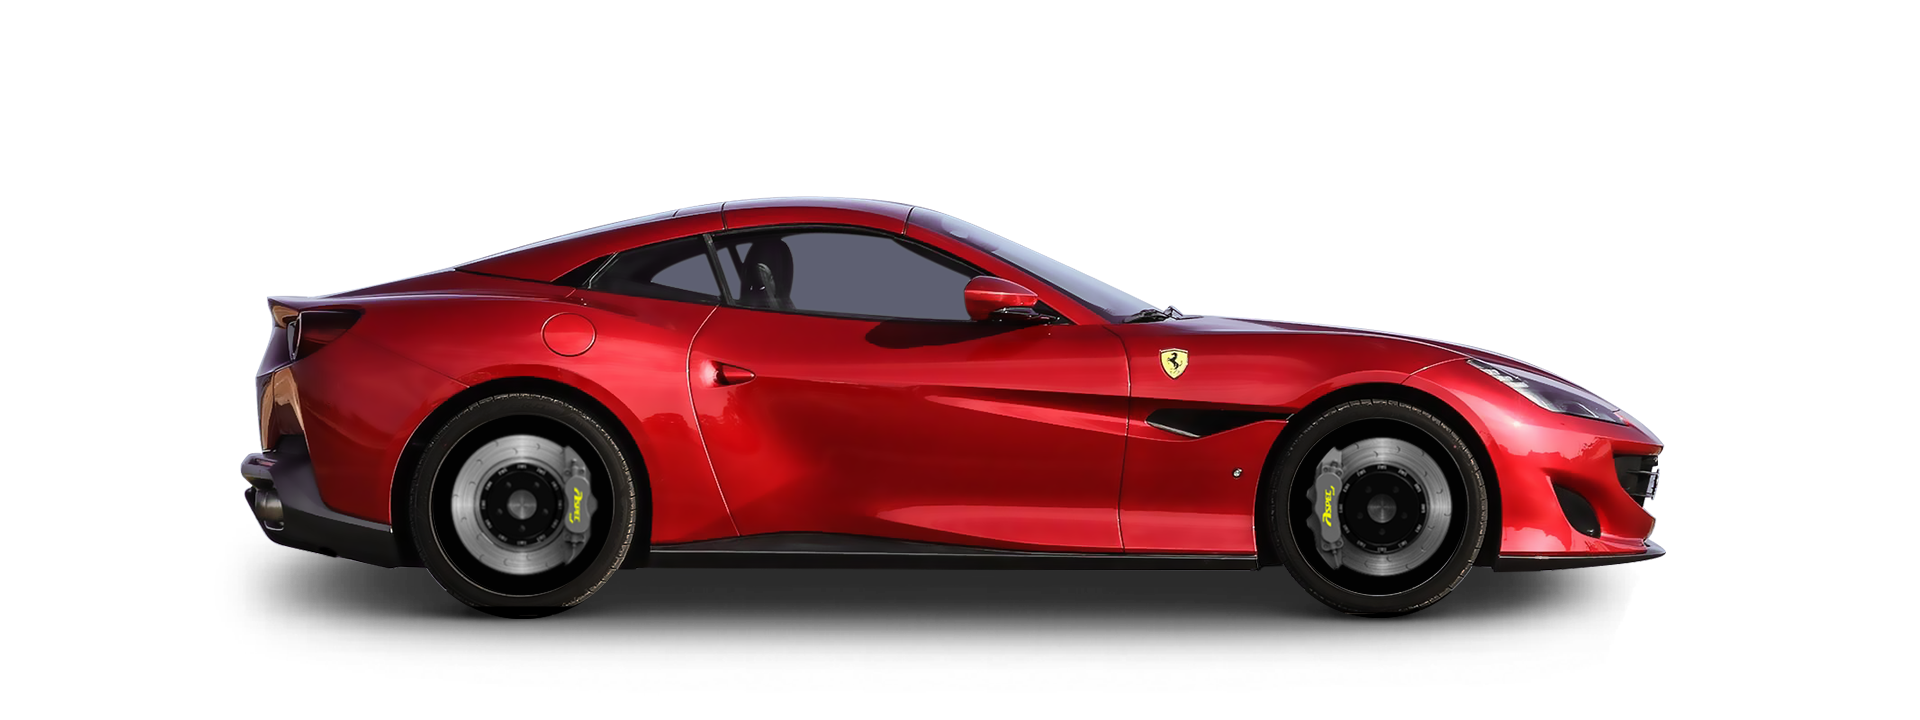 法拉利Ferrari Portofino MF36